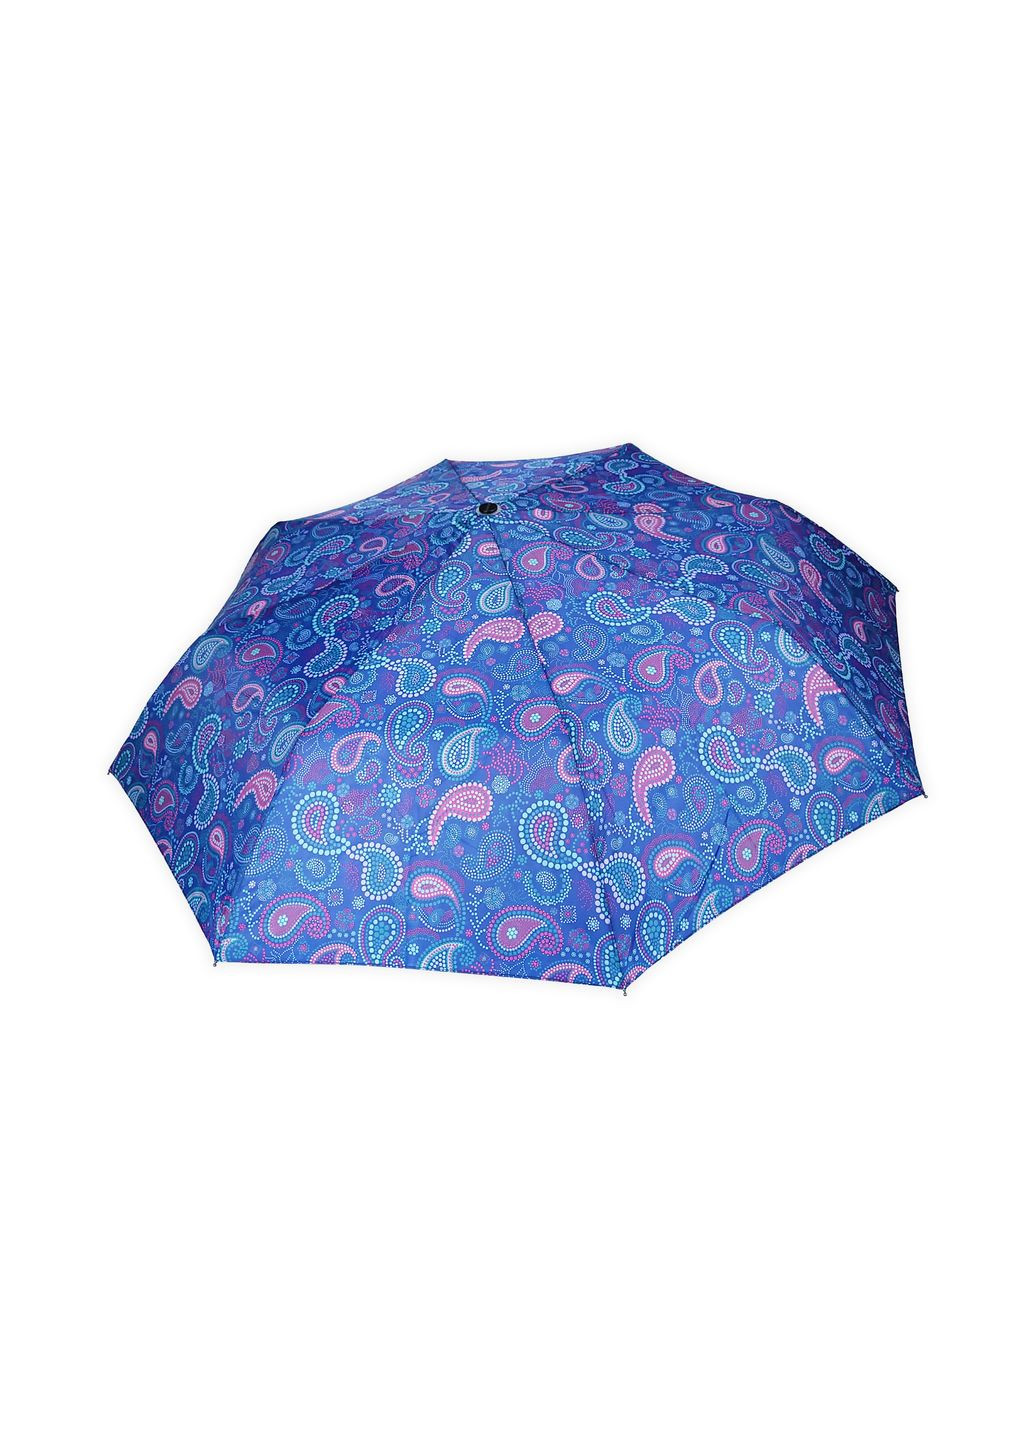 Зонт складной полуатомат фиолетовый турецкий огурец 97 см 8 спиц 061 No Brand (272149761)